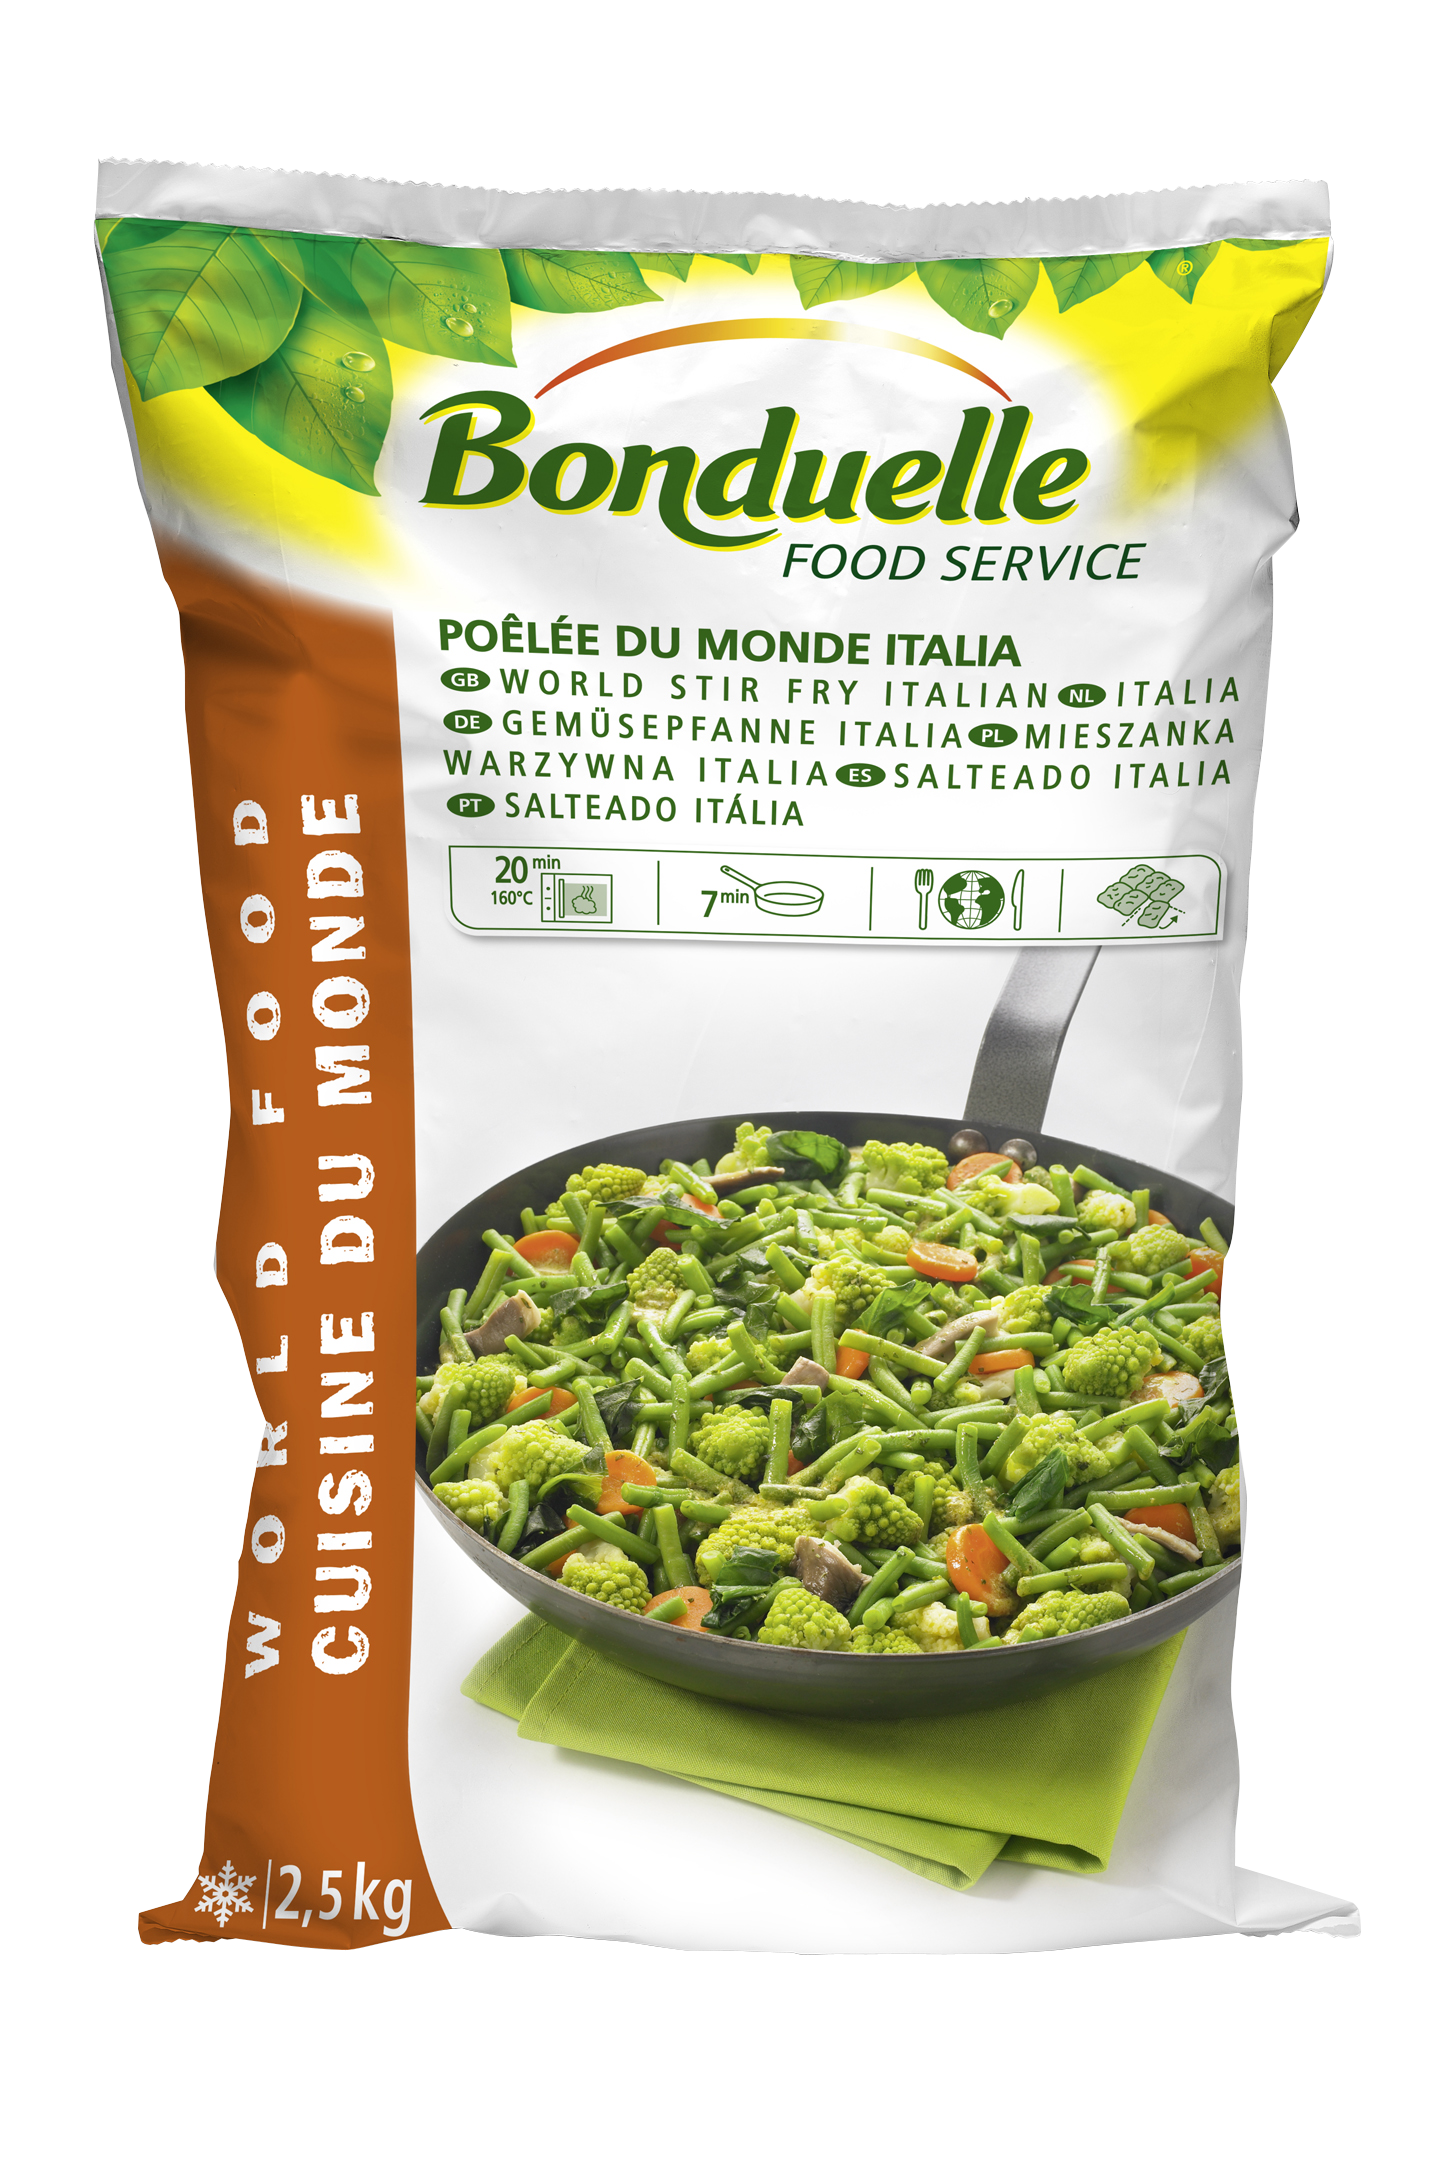 Poelée du Monde Italia  2.5kg IQF Légumes Surgelés Bonduelle Food Service